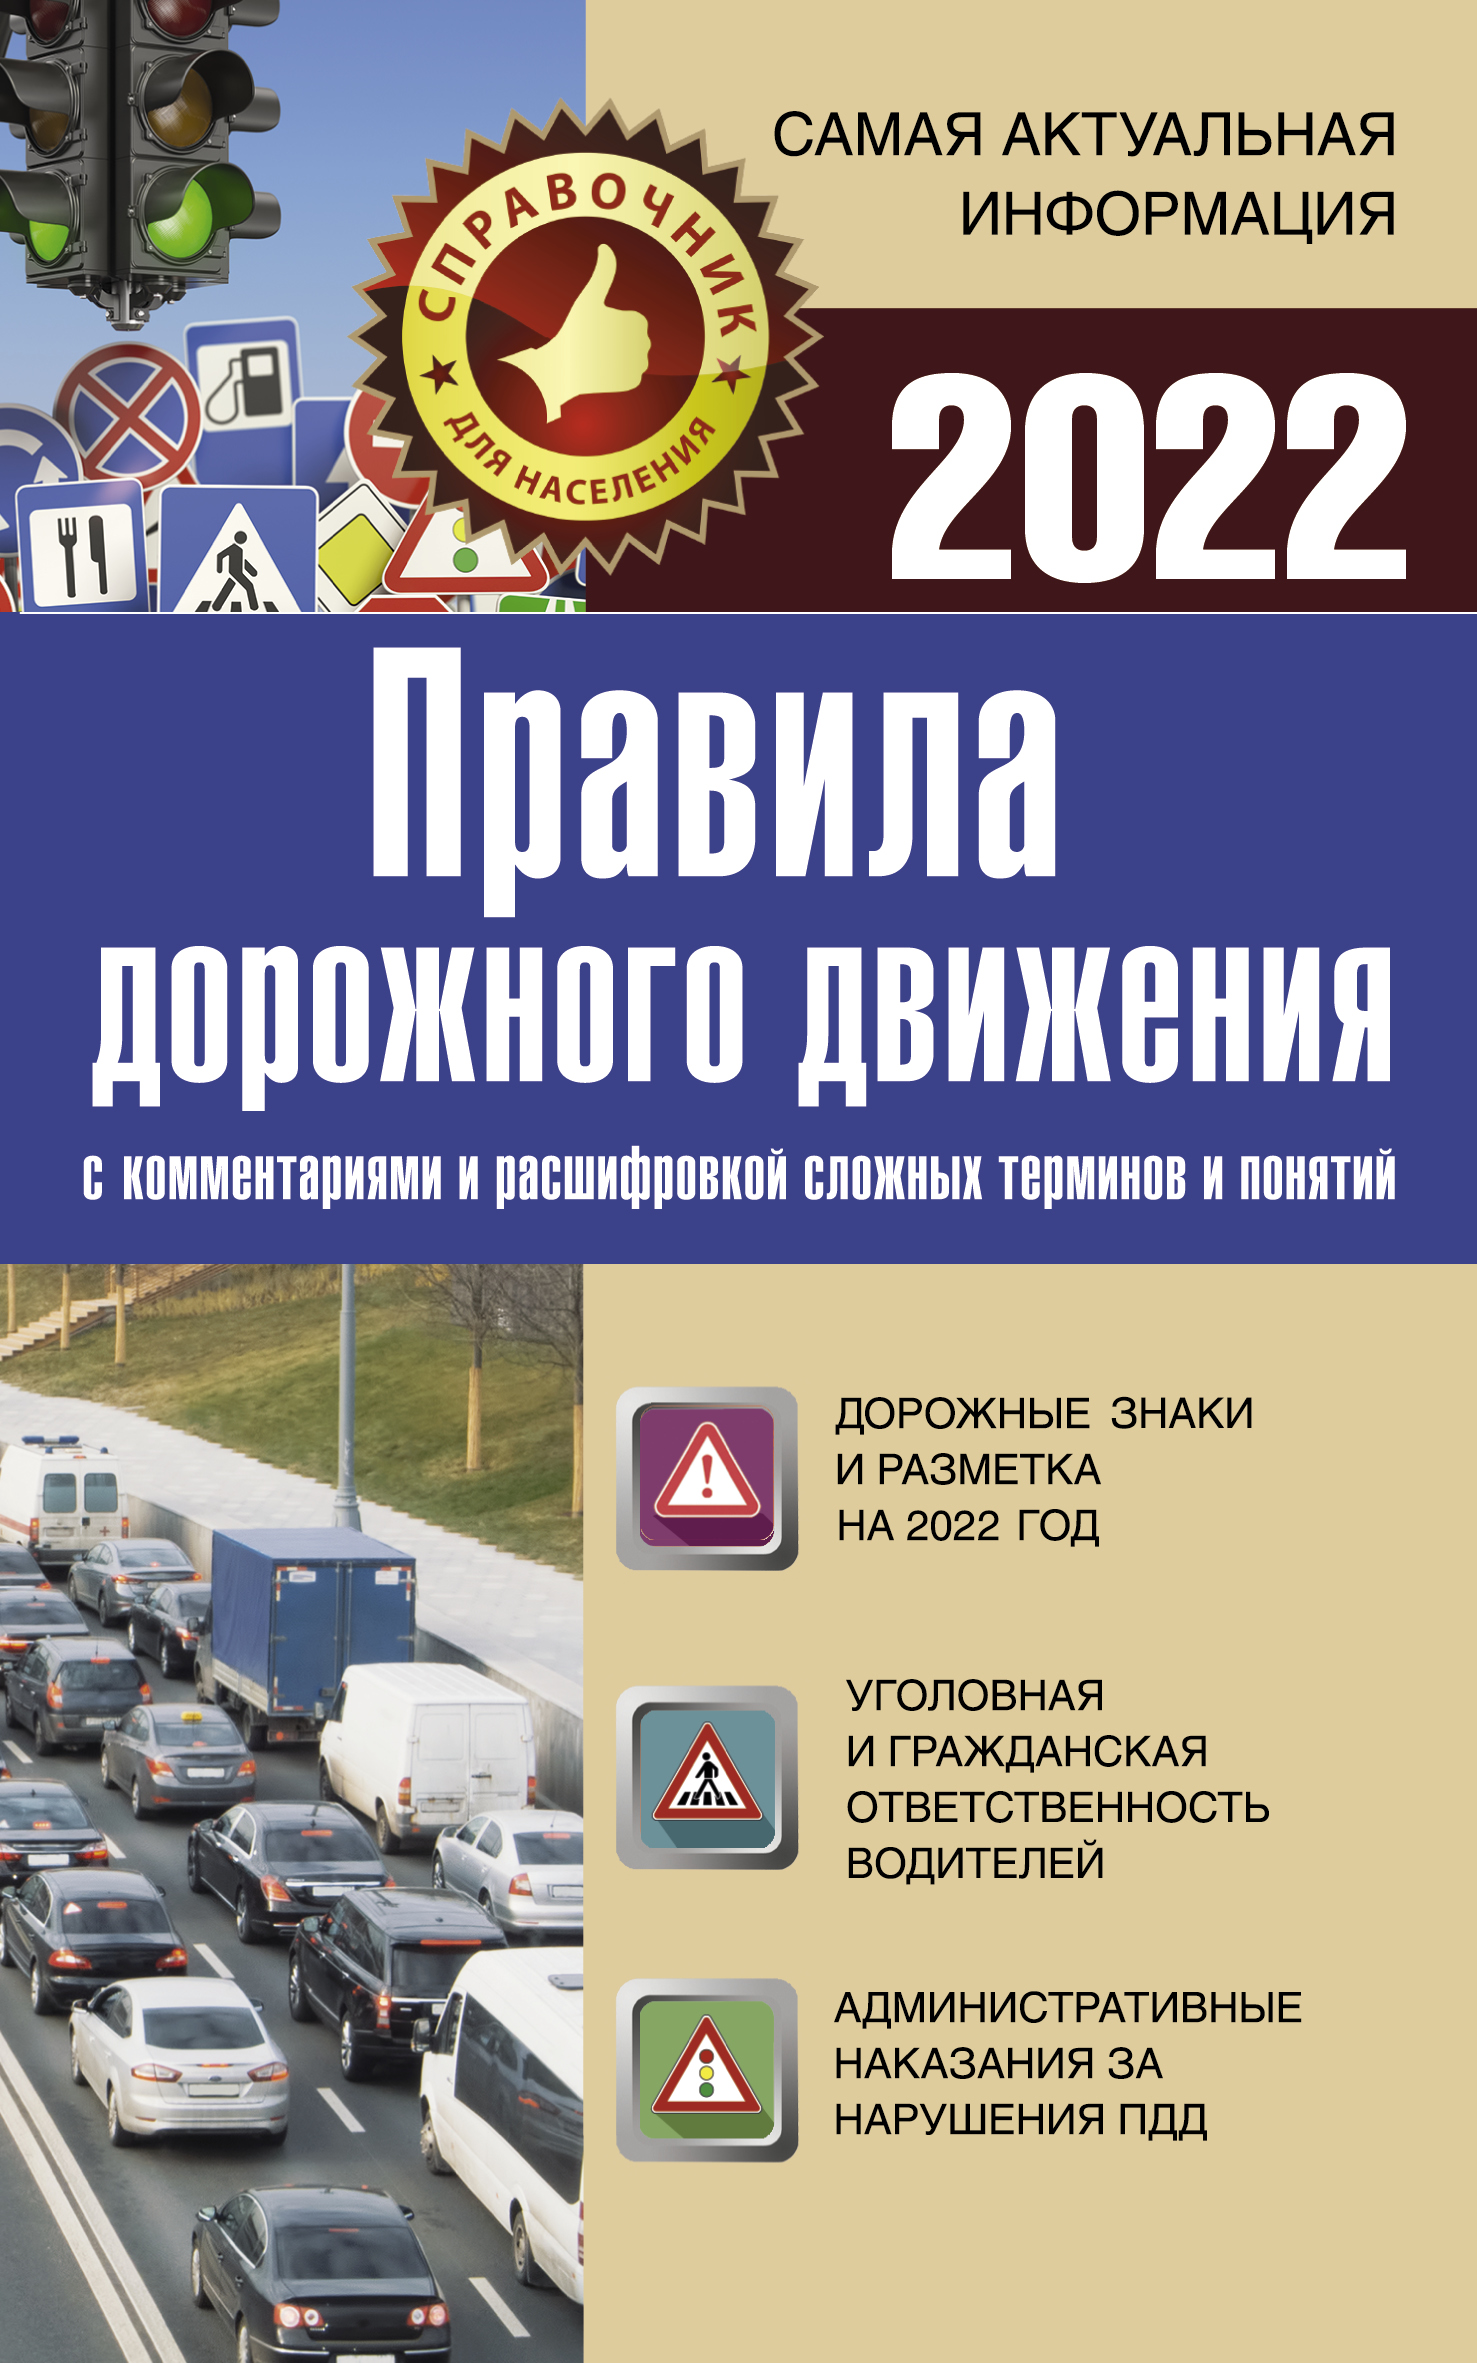 Правила дорожного движения  на 2022 год 